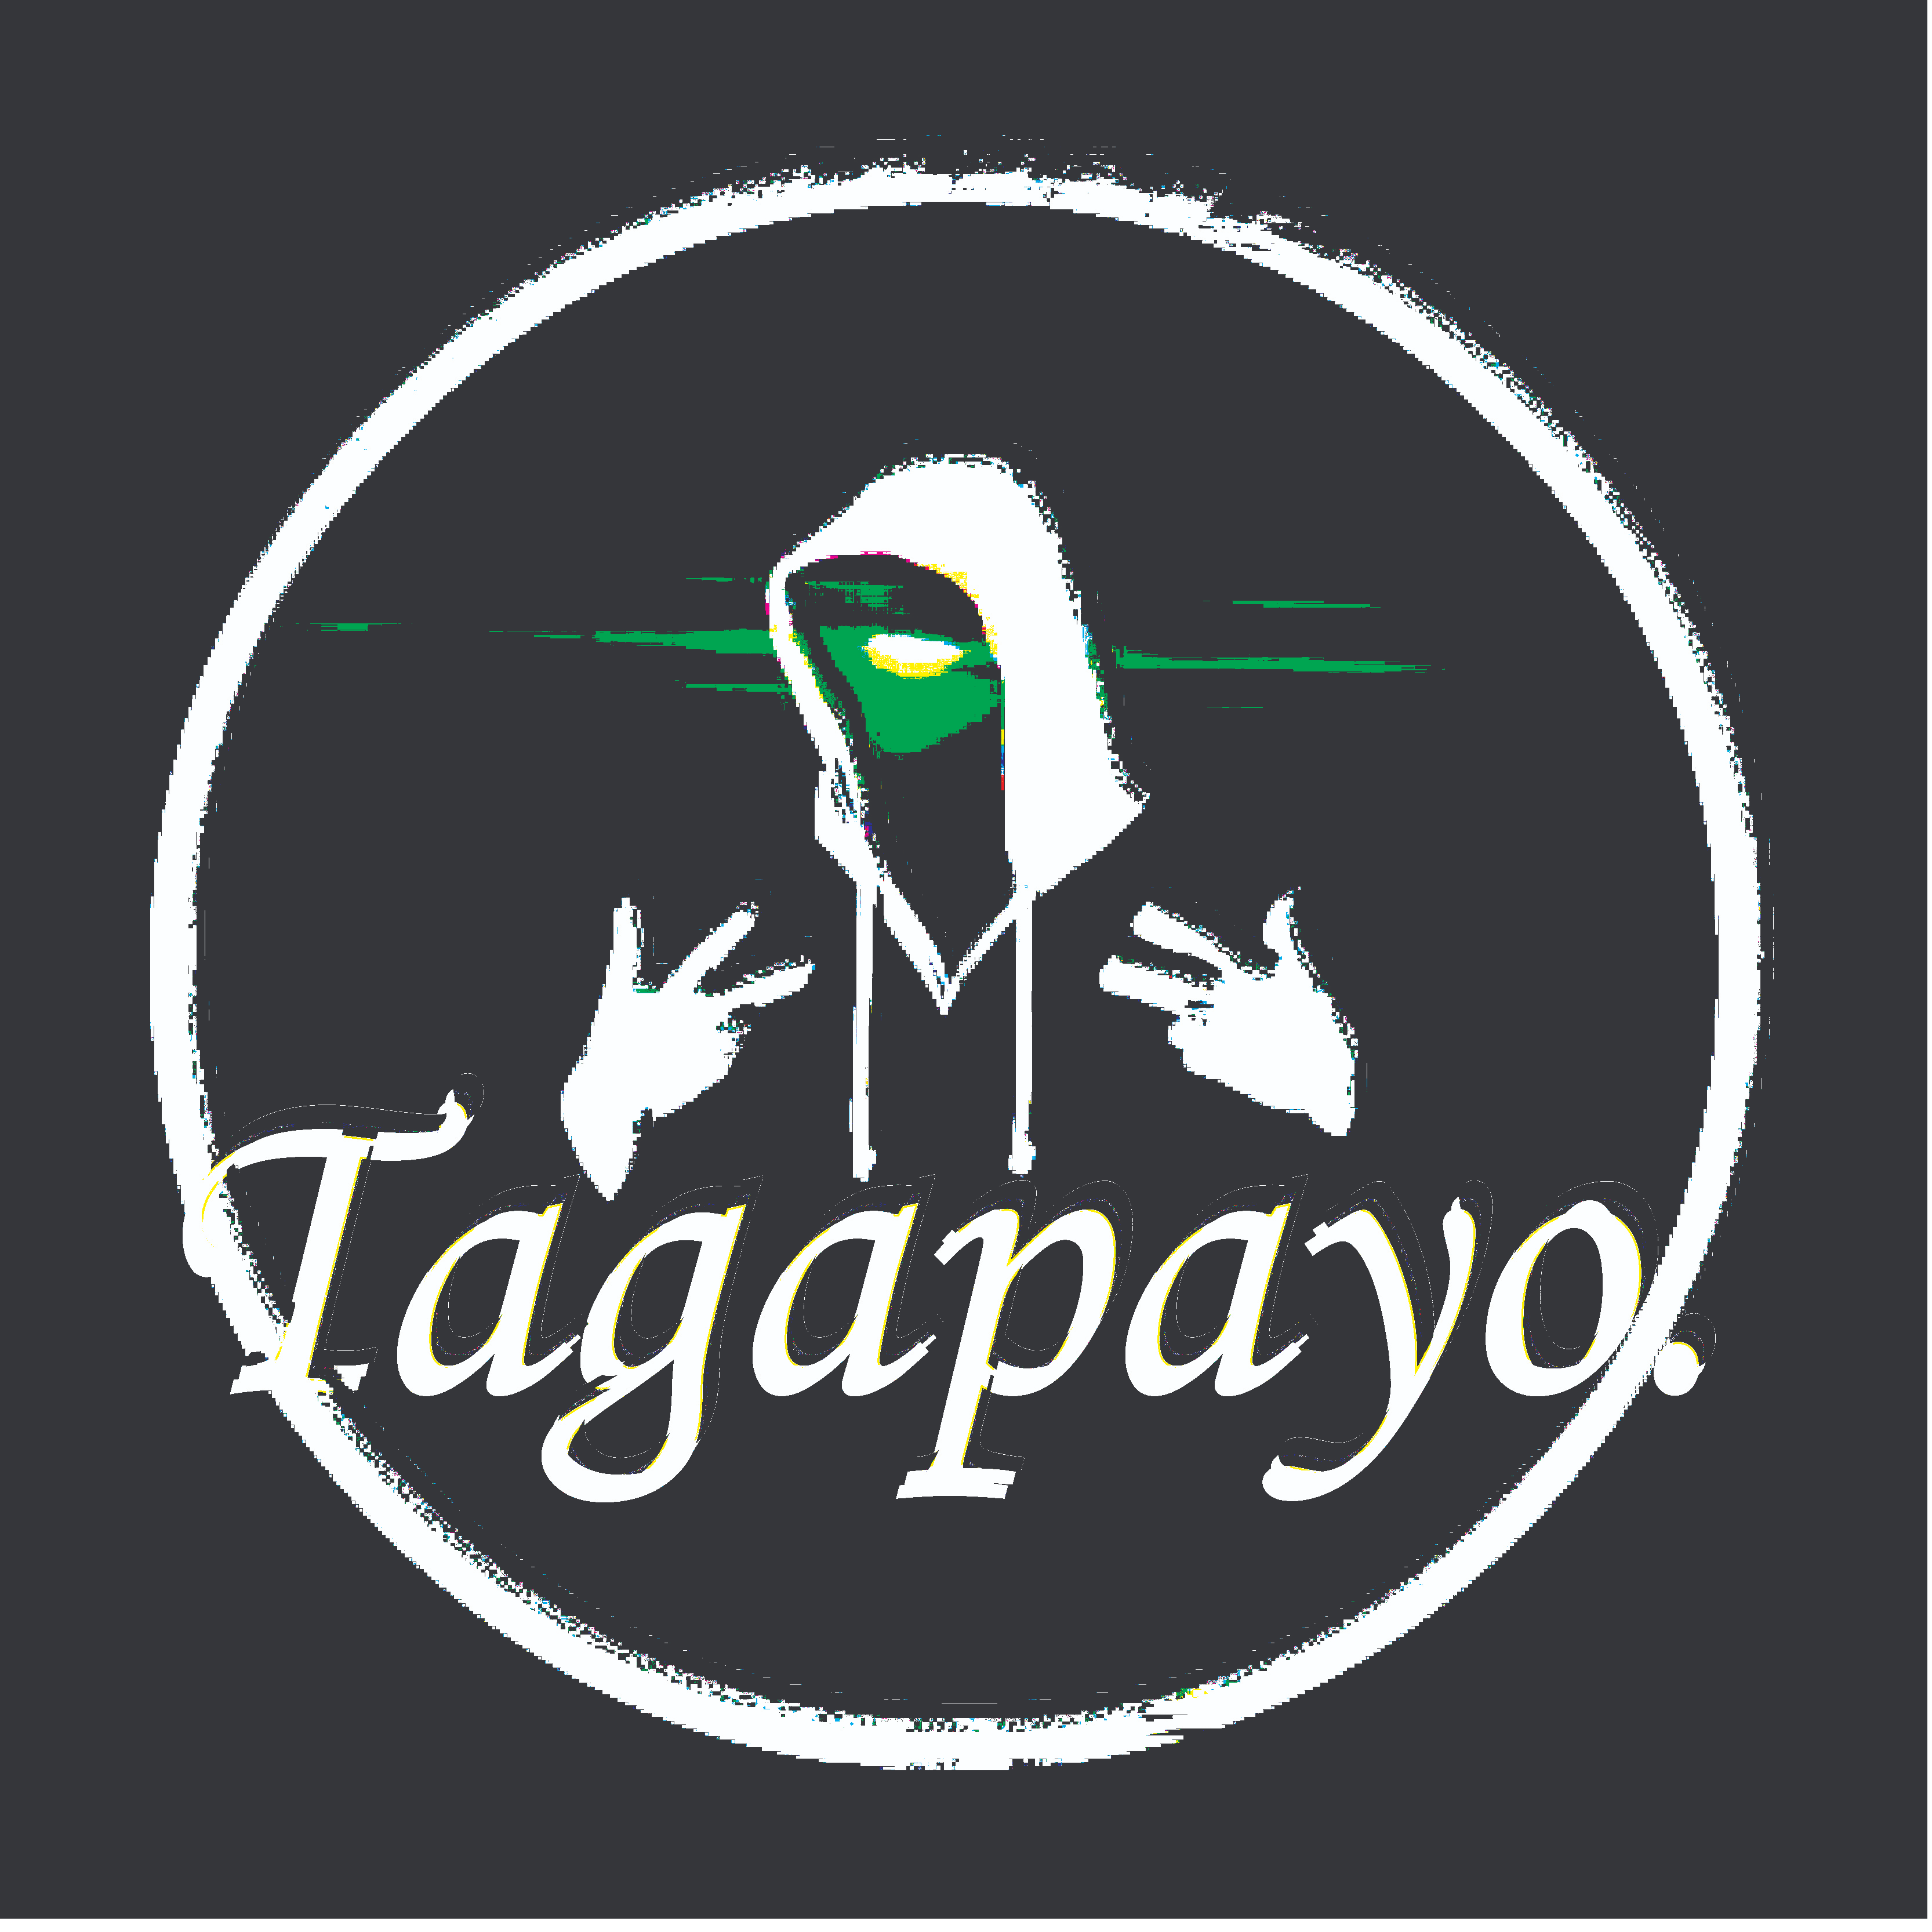 Tagapayo